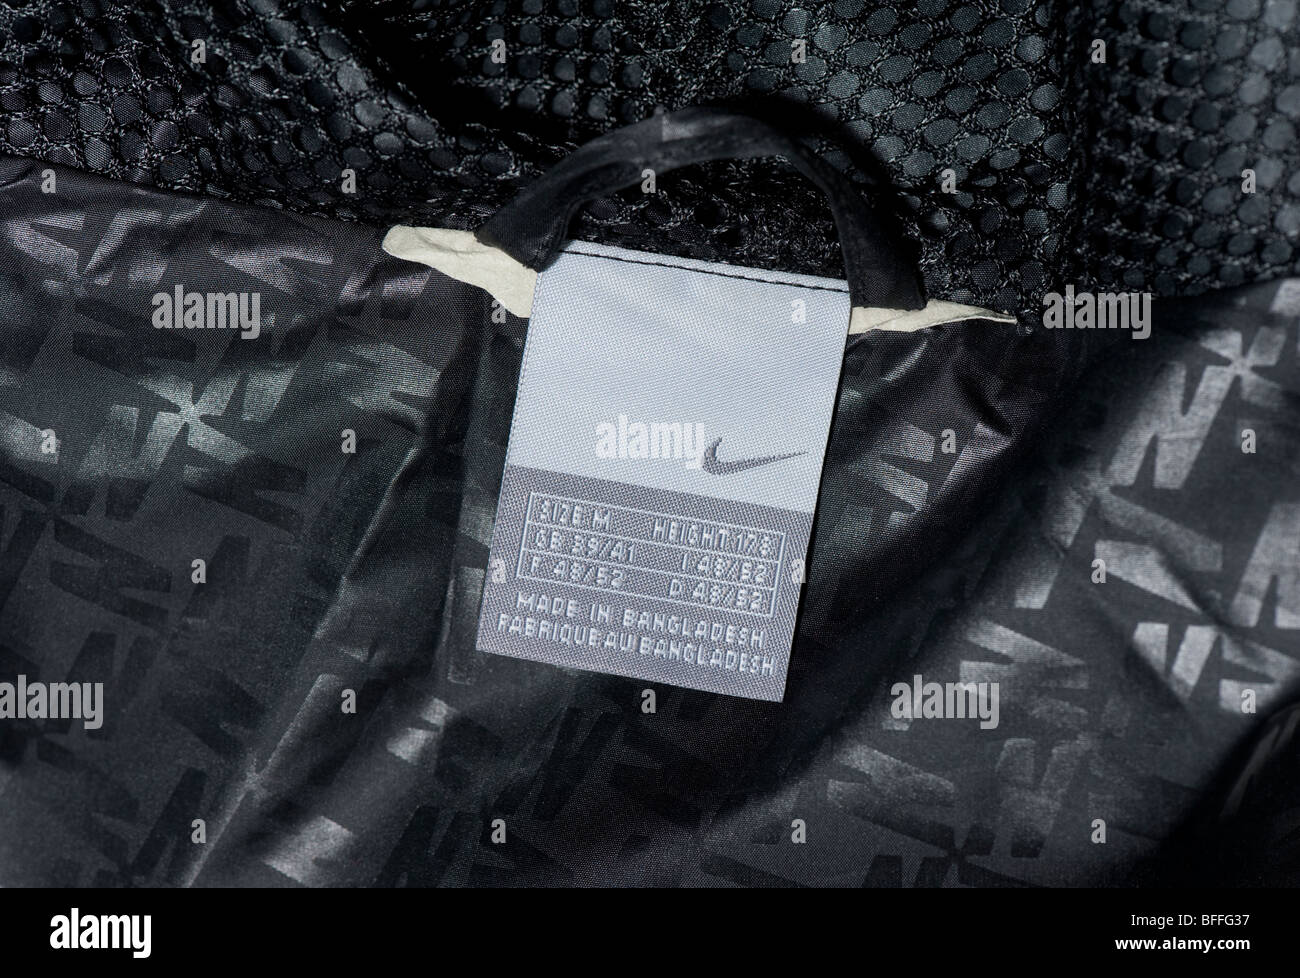 Marque de vêtements Nike Windrunner, au dos de la veste pour hommes noir  cagoule, montrant le logo nike tick Photo Stock - Alamy